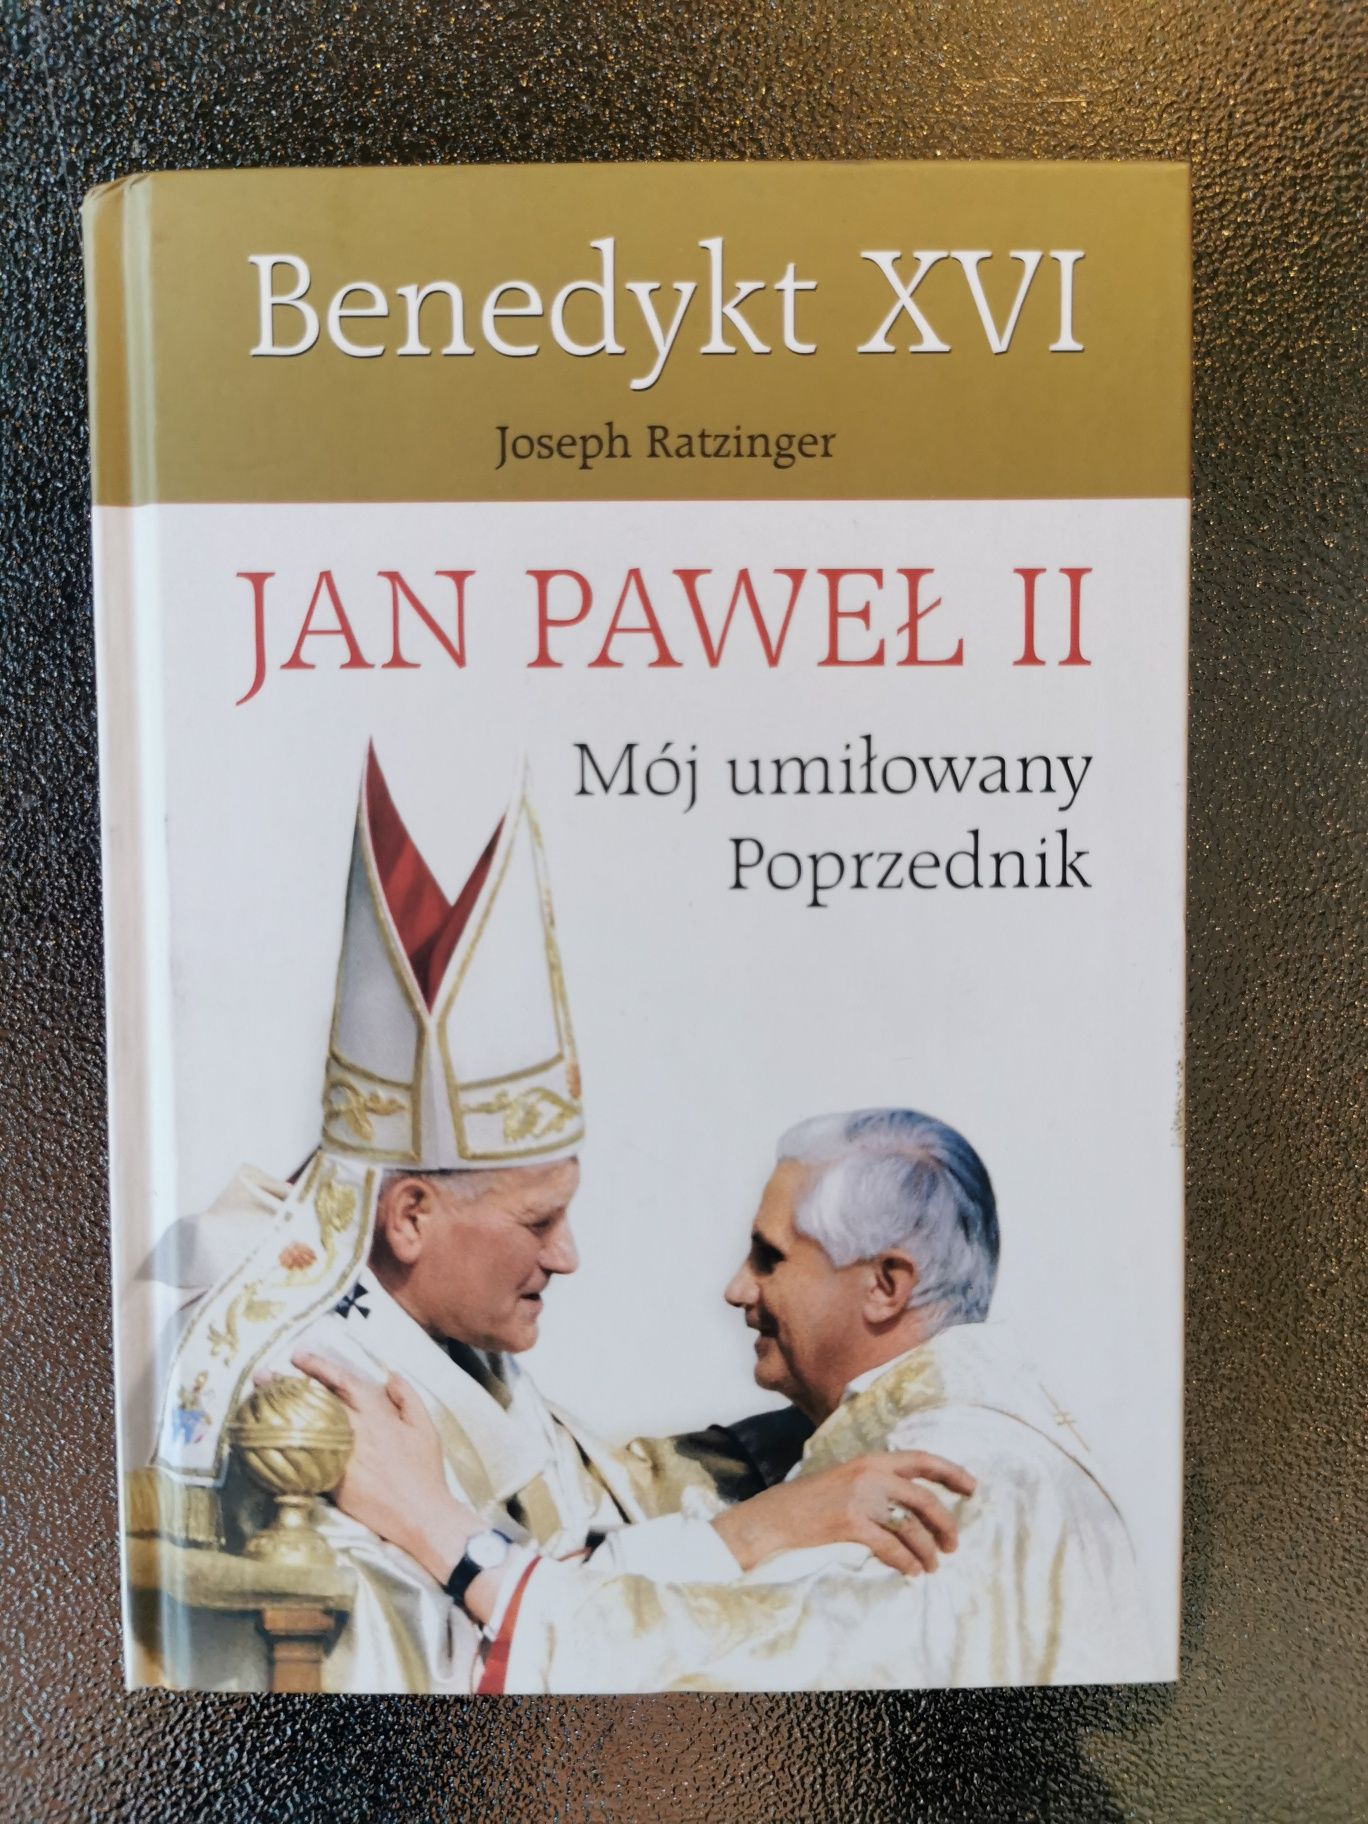 Jan Paweł II Mój umiłowany poprzednik - Benedykt XVI